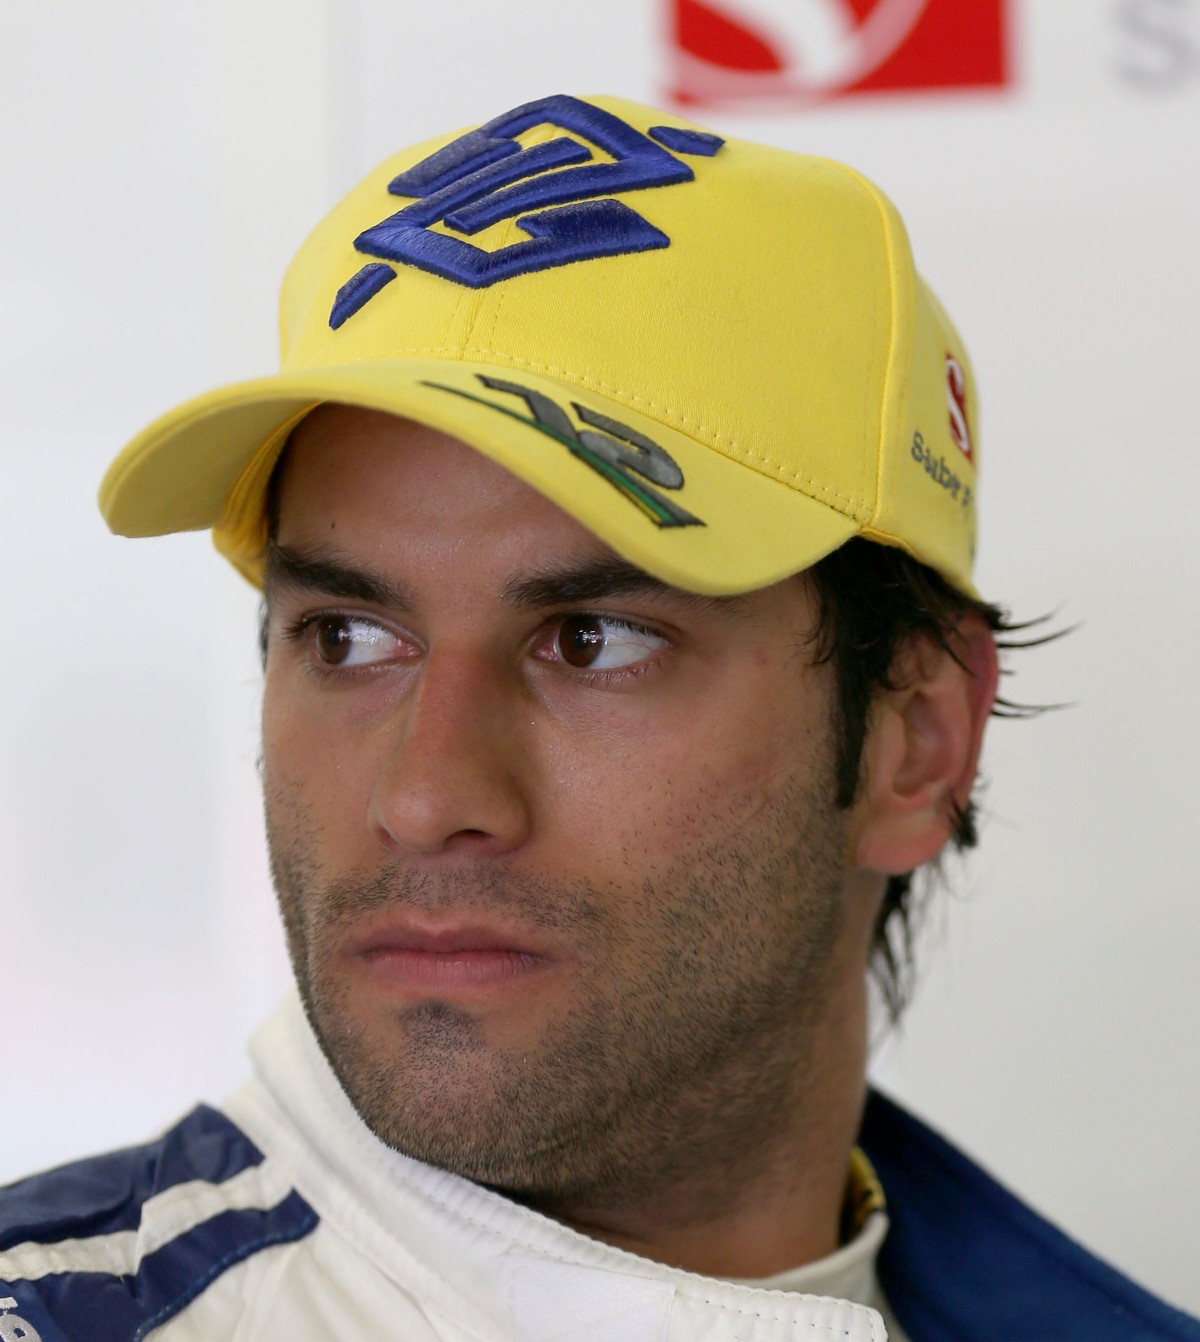 Felipe Nasr needs more money to buy Sauber ride